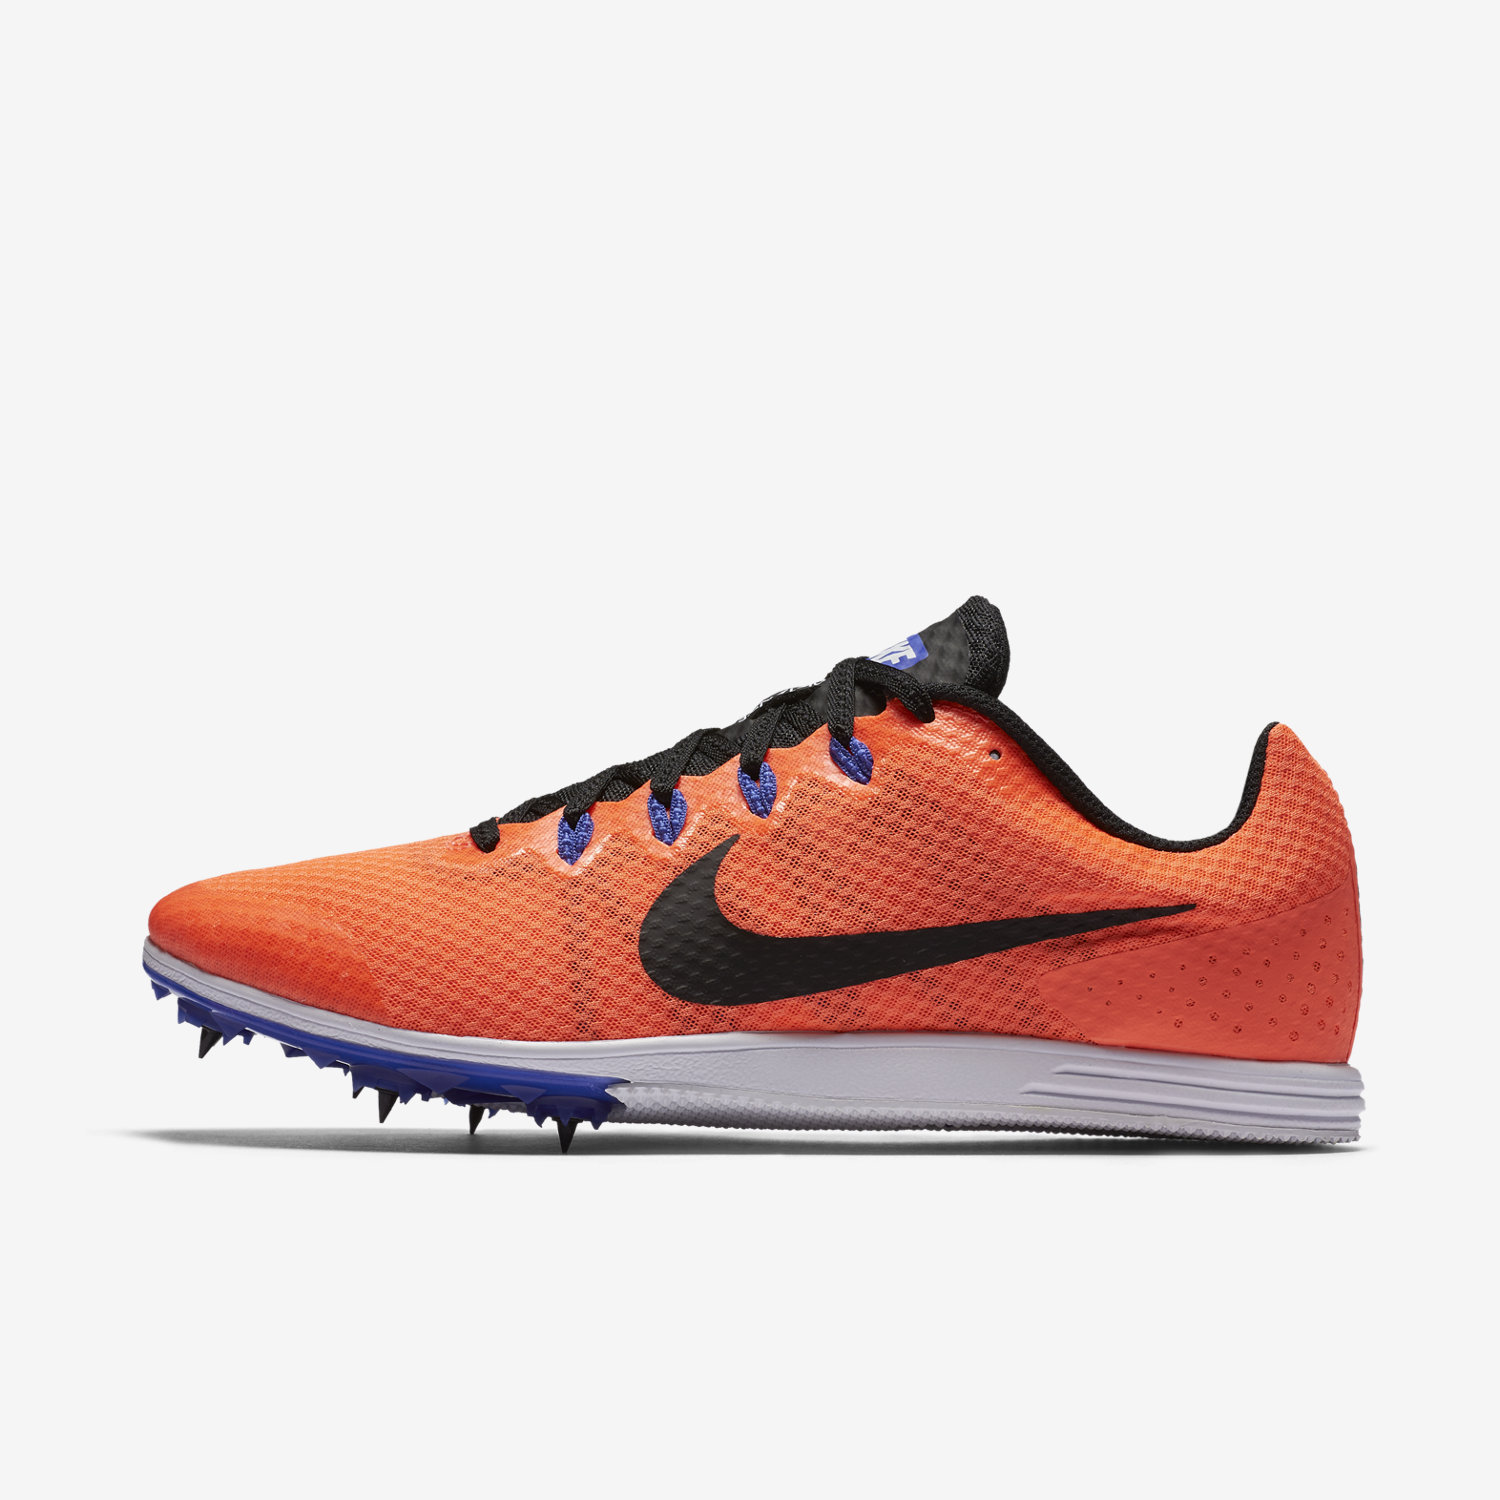 Παπουτσια Στιβου Spikes γυναικεια Nike Zoom Rival D 9 πορτοκαλι/μπλε/ασπρα/μαυρα 19212036RL